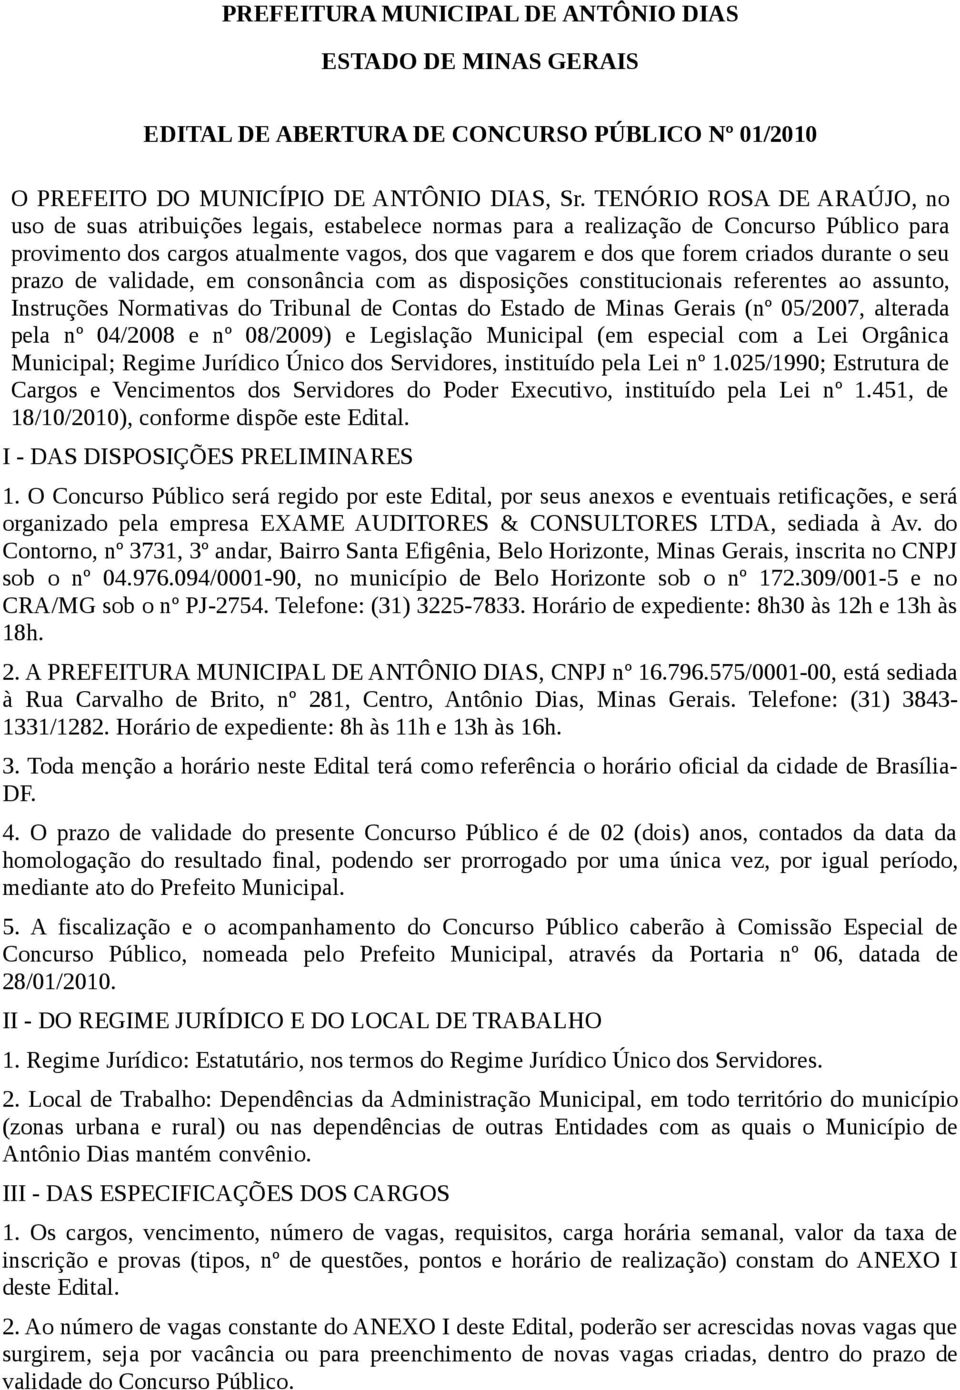 durante o seu prazo de validade, em consonância com as disposições constitucionais referentes ao assunto, Instruções Normativas do Tribunal de Contas do Estado de Minas Gerais (nº 05/2007, alterada